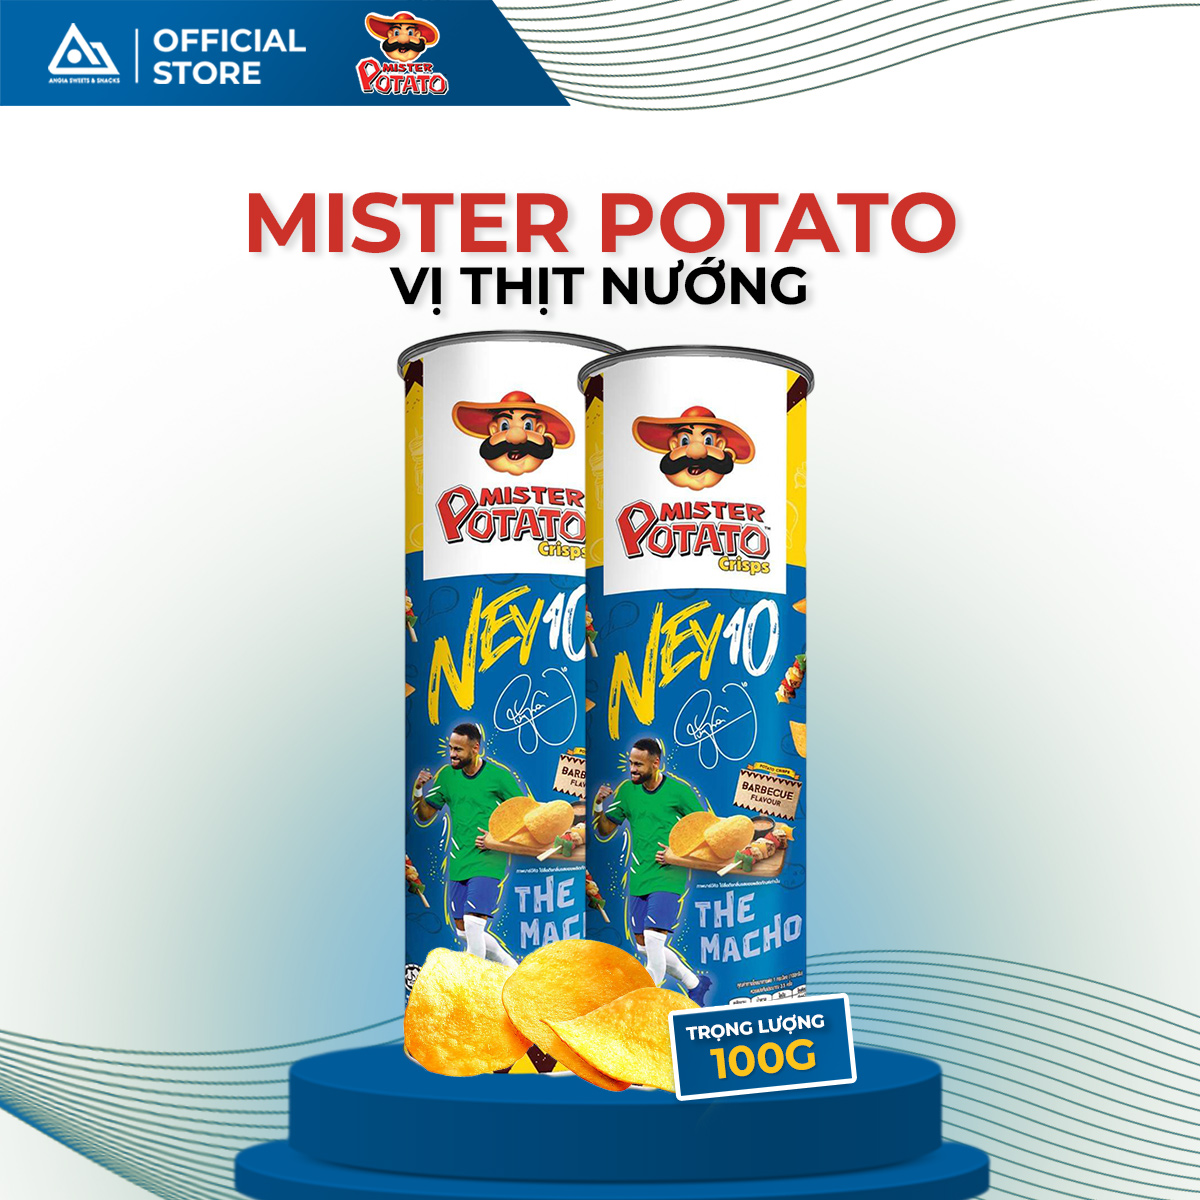 Snack khoai tây chiên vị Nướng Mister Potato bimbim có hình Neymar 100g An Gia Sweets Snacks